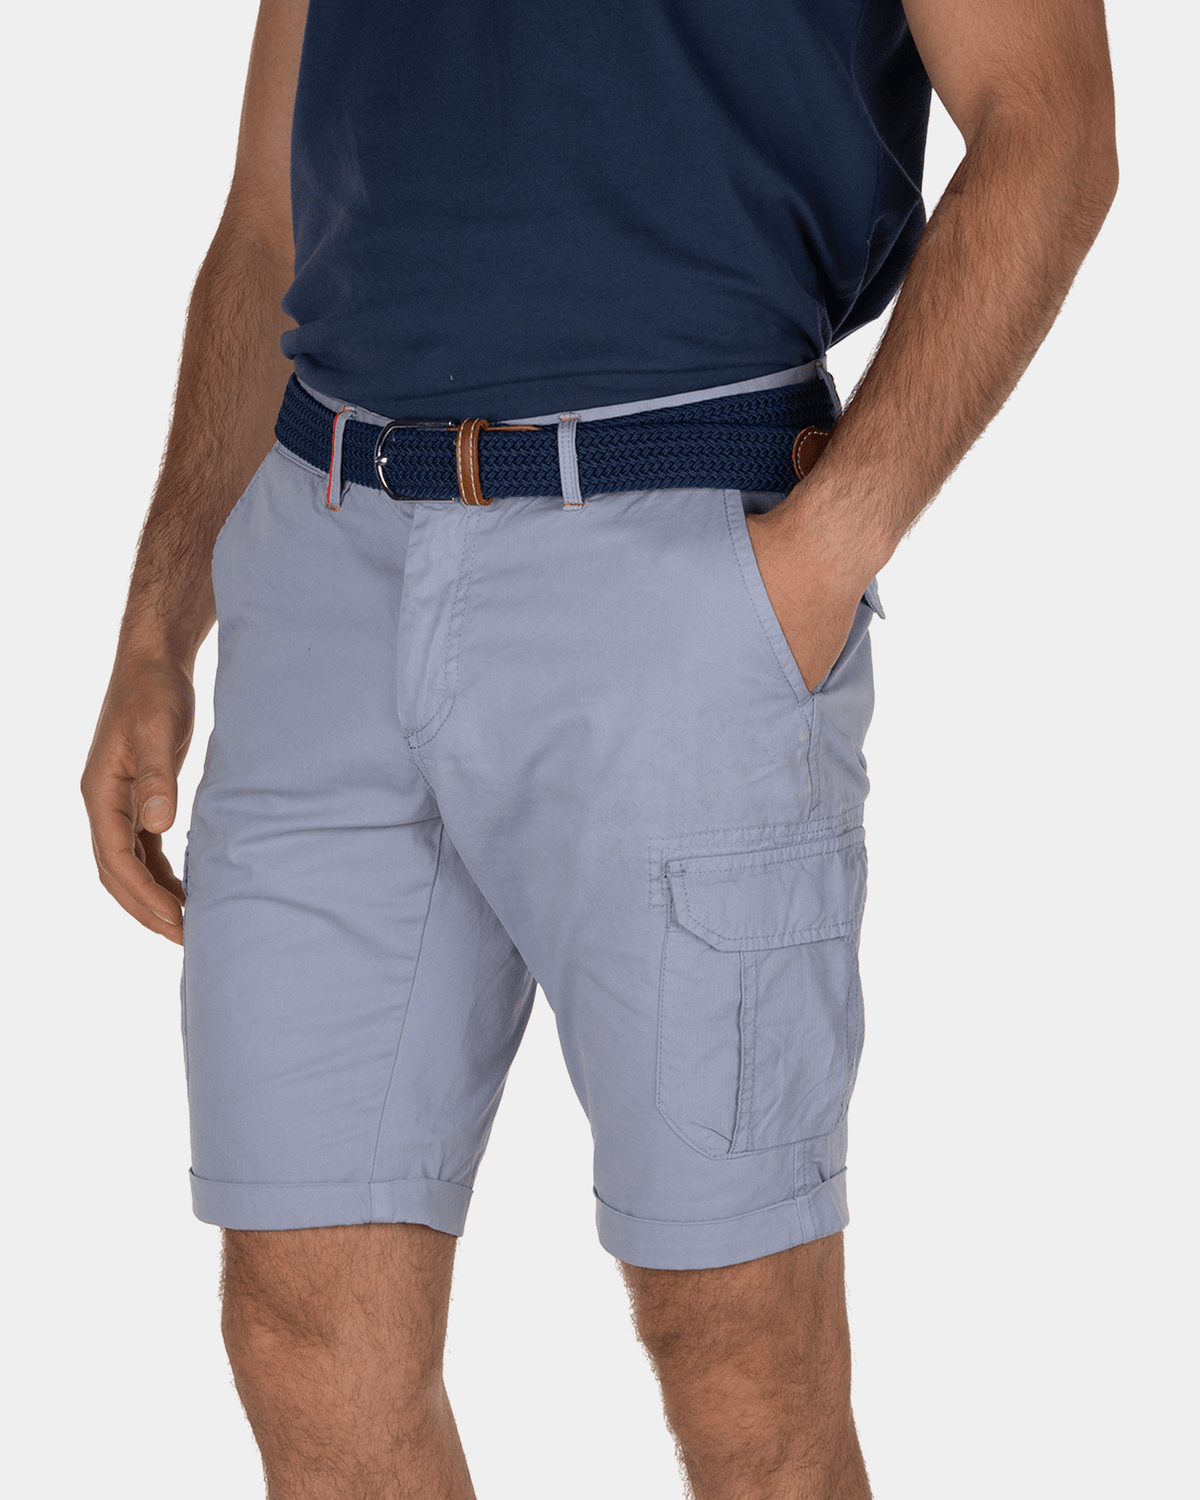 Larry Bay cargo shorts - Dusk Blue